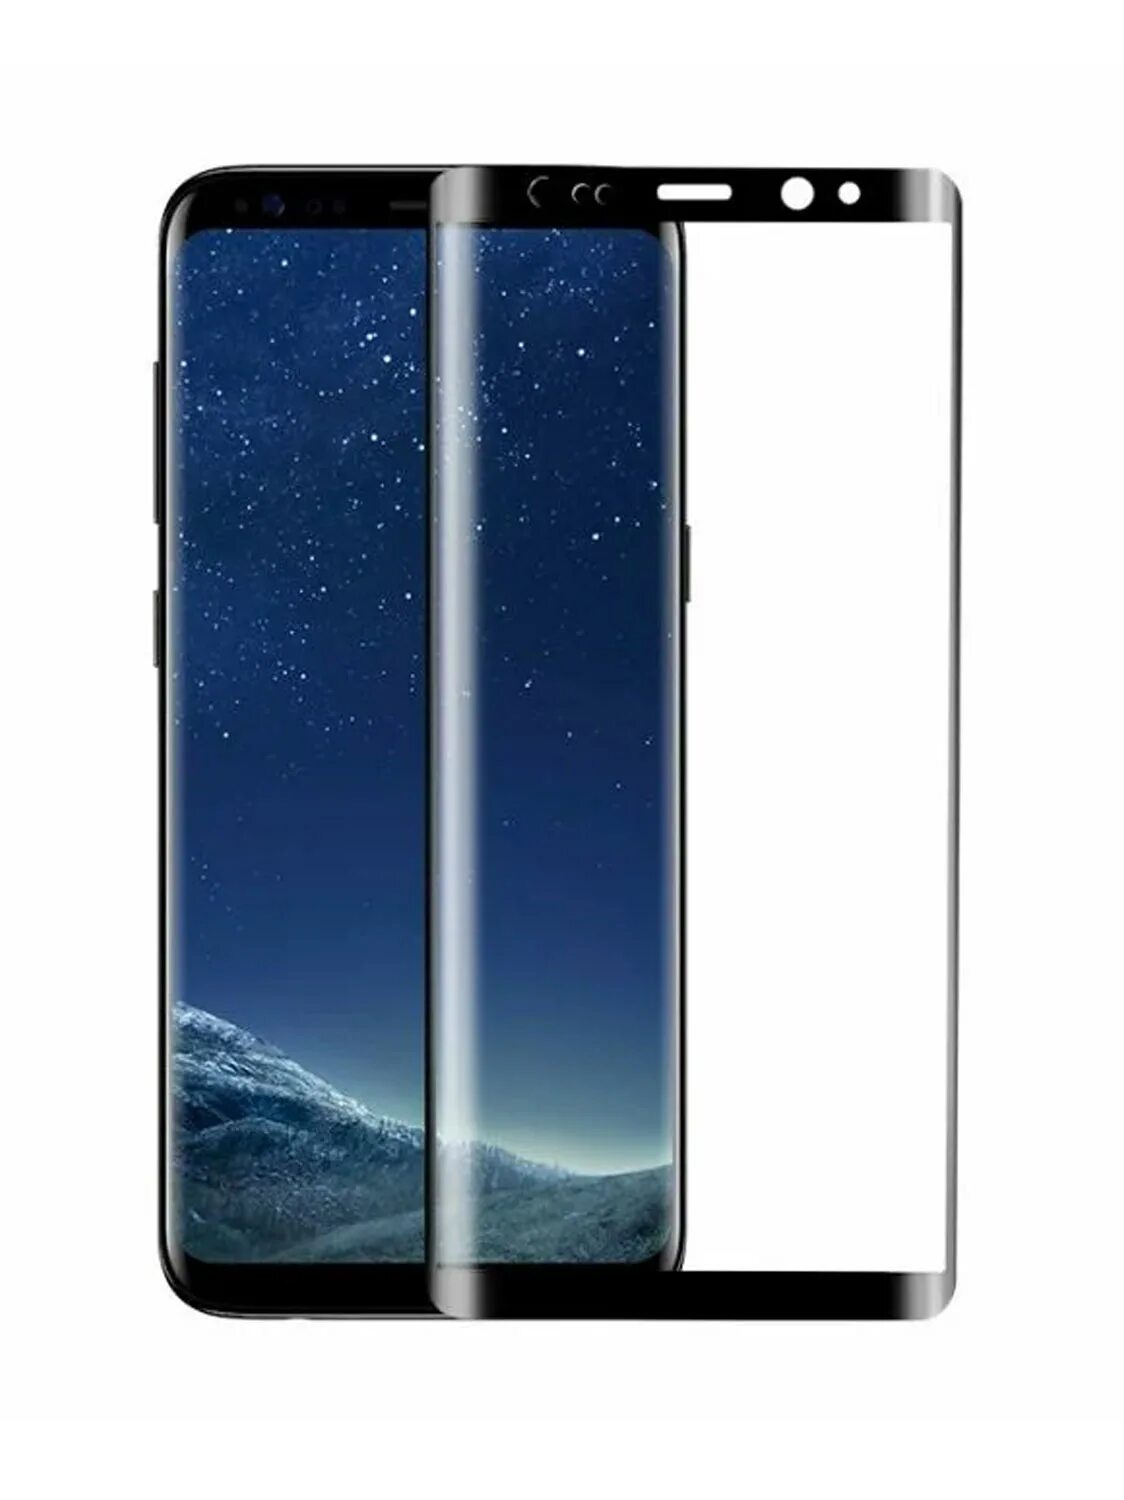 Стекло samsung s8 plus. Защитное стекло на Samsung s9 Plus, 3d Case place. Защитное стекло для Samsung Galaxy Note 8 черное с рамкой. Защитное стекло для Samsung Galaxy Note 8 черное с рамкой IQZIP.